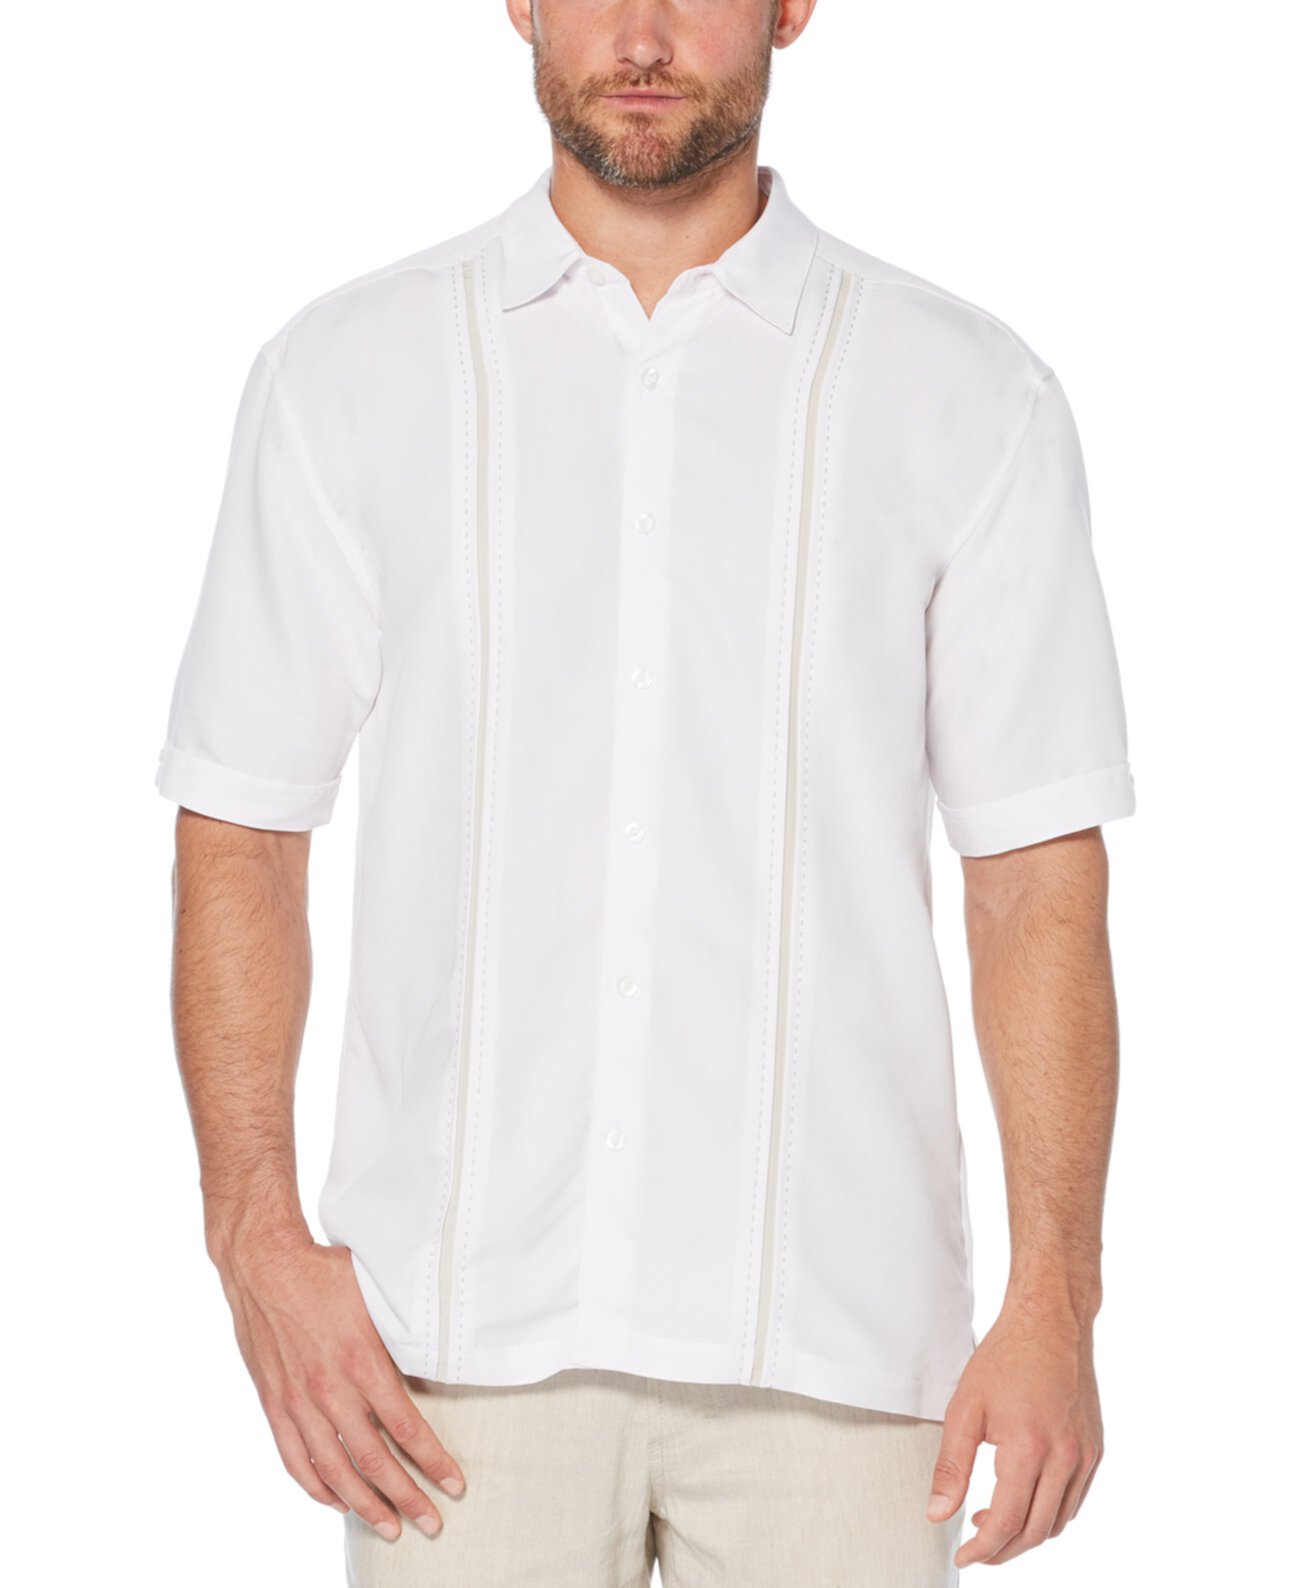 Мужская рубашка с коротким рукавом в большую и высокую полоску Cubavera